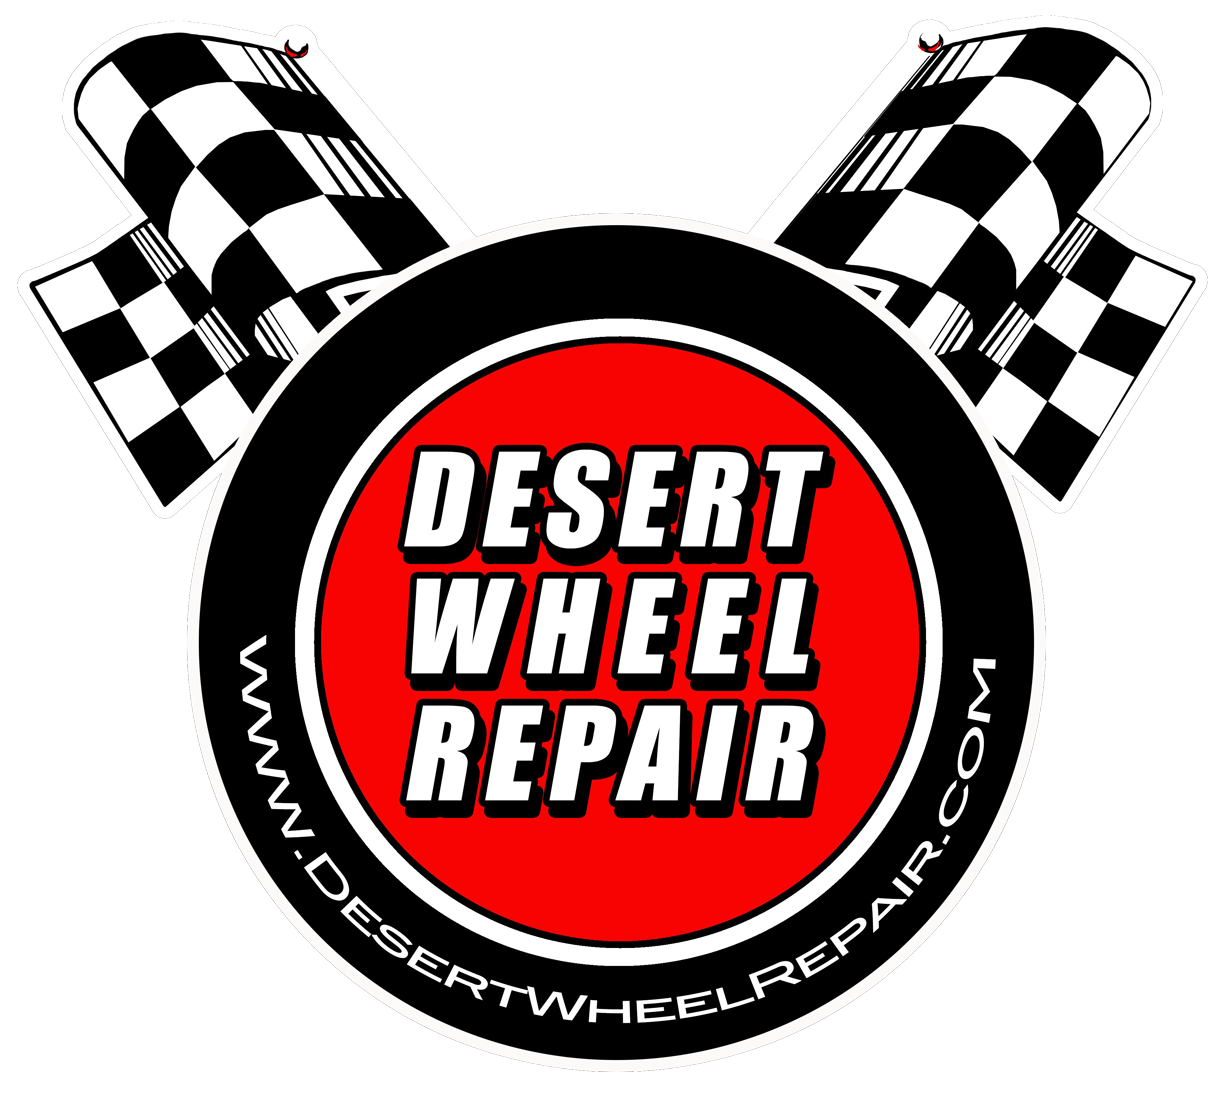 Desert Wheel Repair